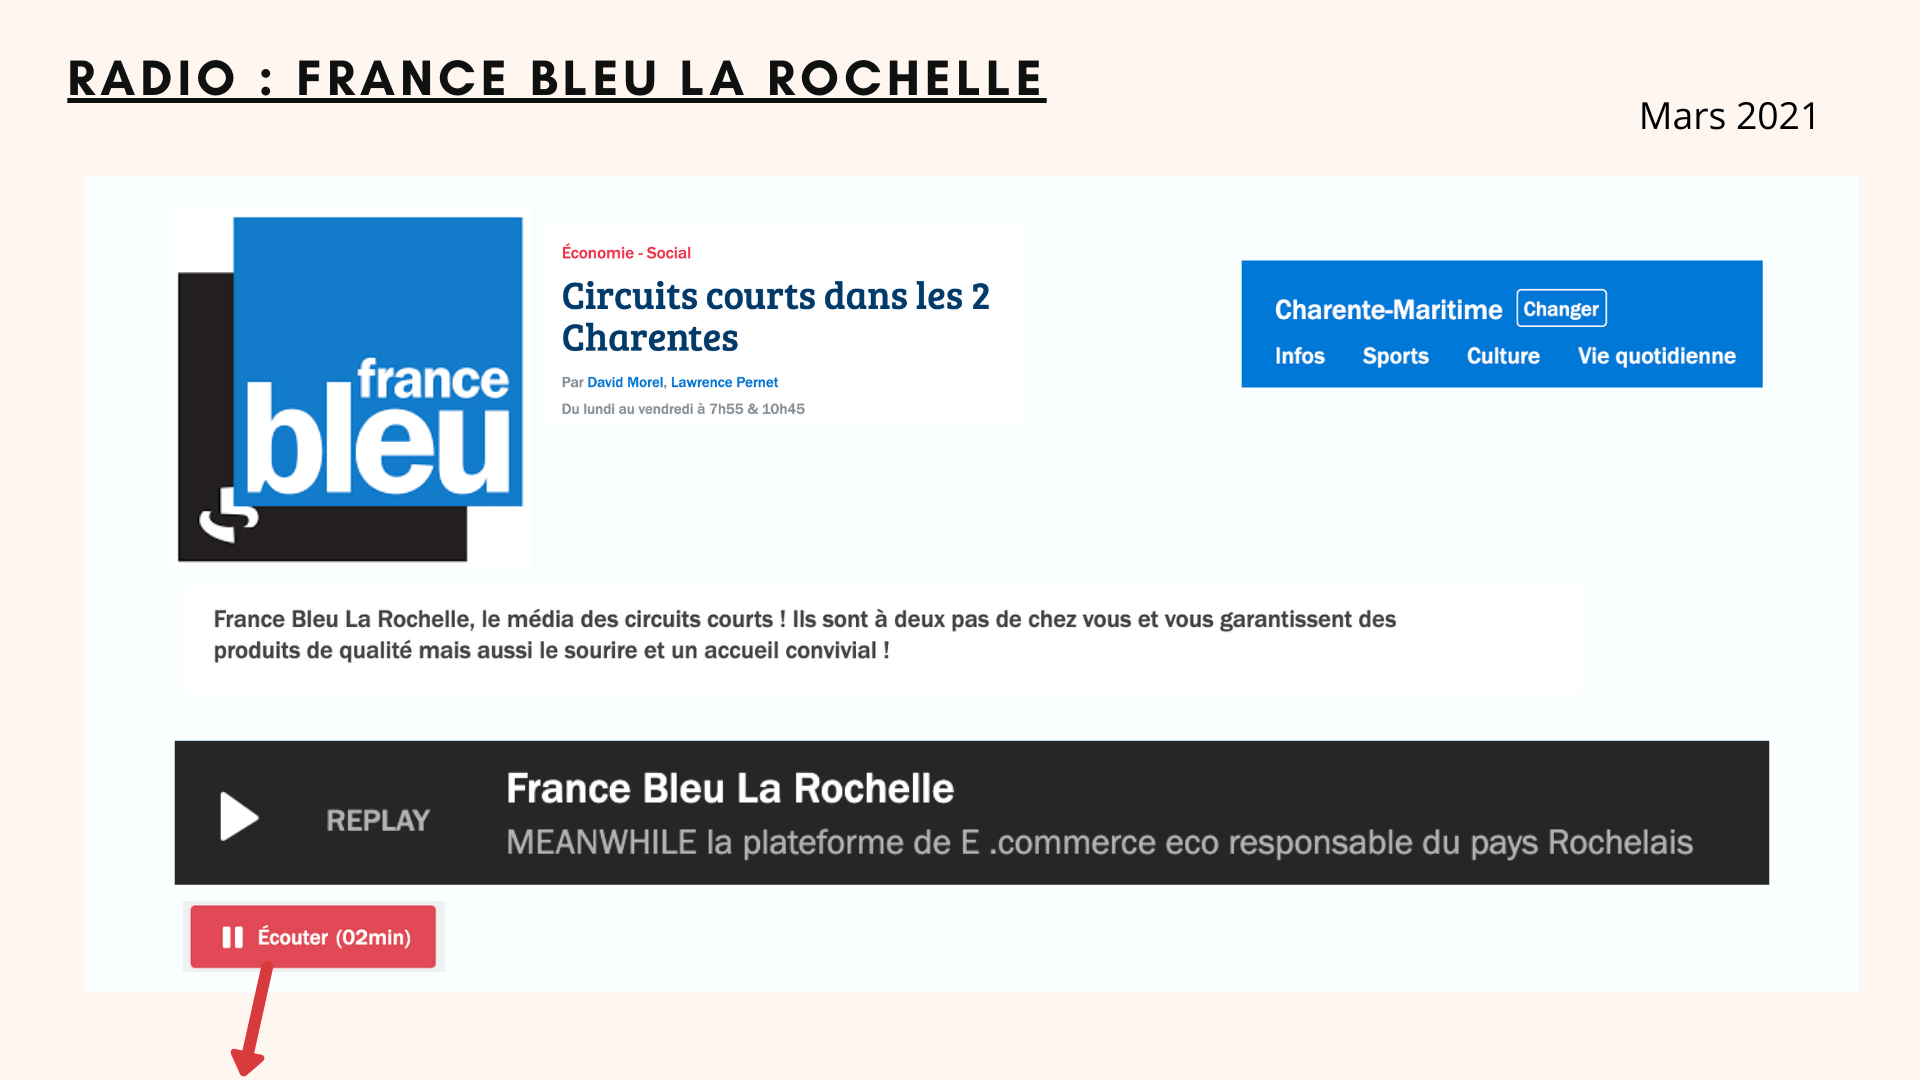 France bleu la rochelle parle de meanwhile boutique eco responsable